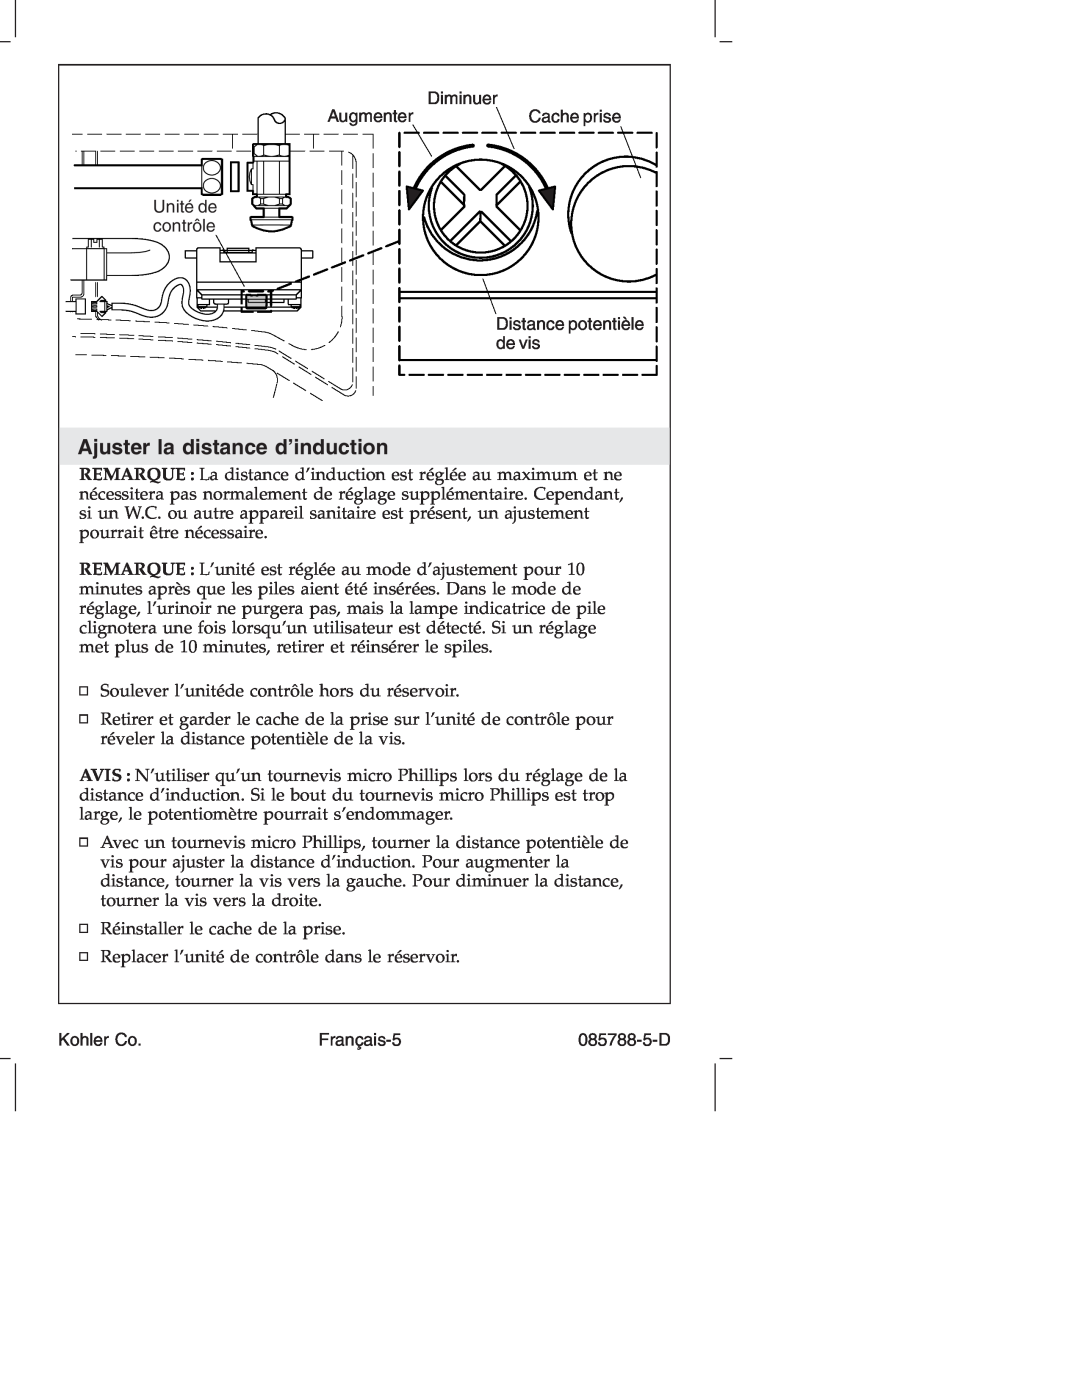 Kohler K4915 manual Ajuster la distance d’induction, Augmenter, Diminuer, Cache prise, Français-5, Kohler Co, 085788-5-D 